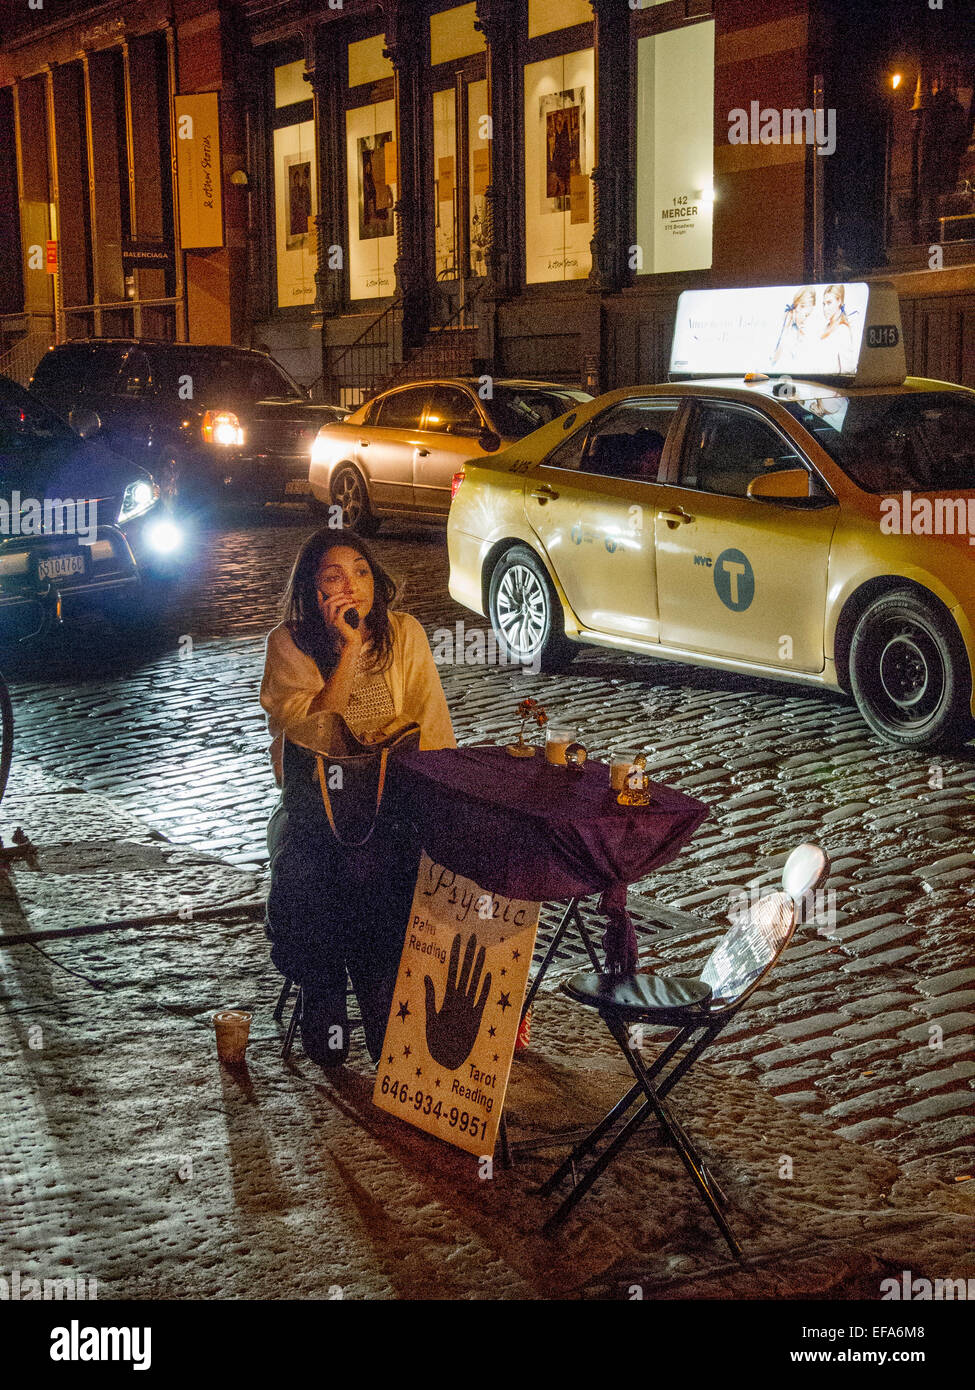 Un trottoir et psychiques tarot reader parle au téléphone cellulaire pendant l'attente pour les clients à une table pliante sur un trottoir de Manhattan de nuit à Soho, New York City. Note des pavés et taxi. Banque D'Images